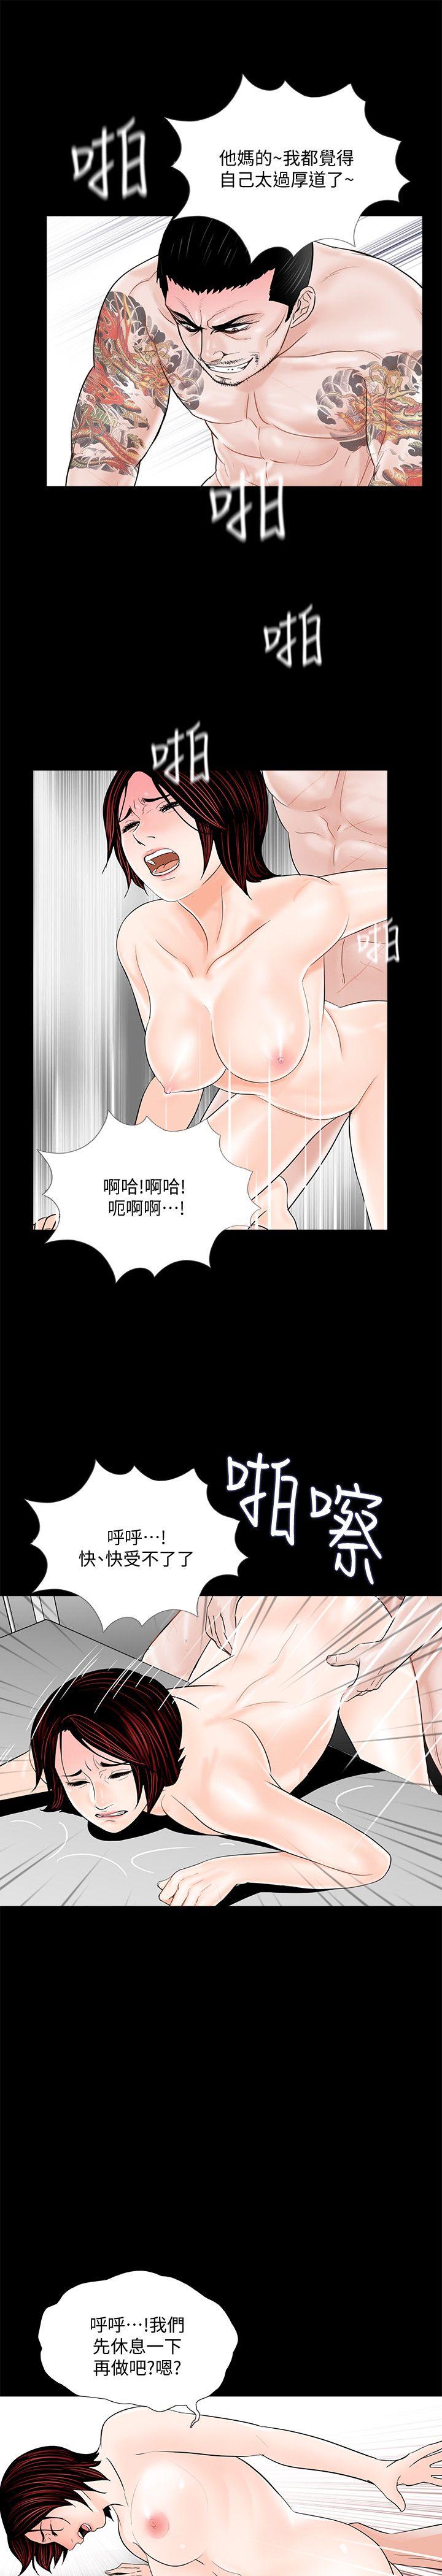 韩国污漫画 夢魘 第52话-真书的梦魇[04 16